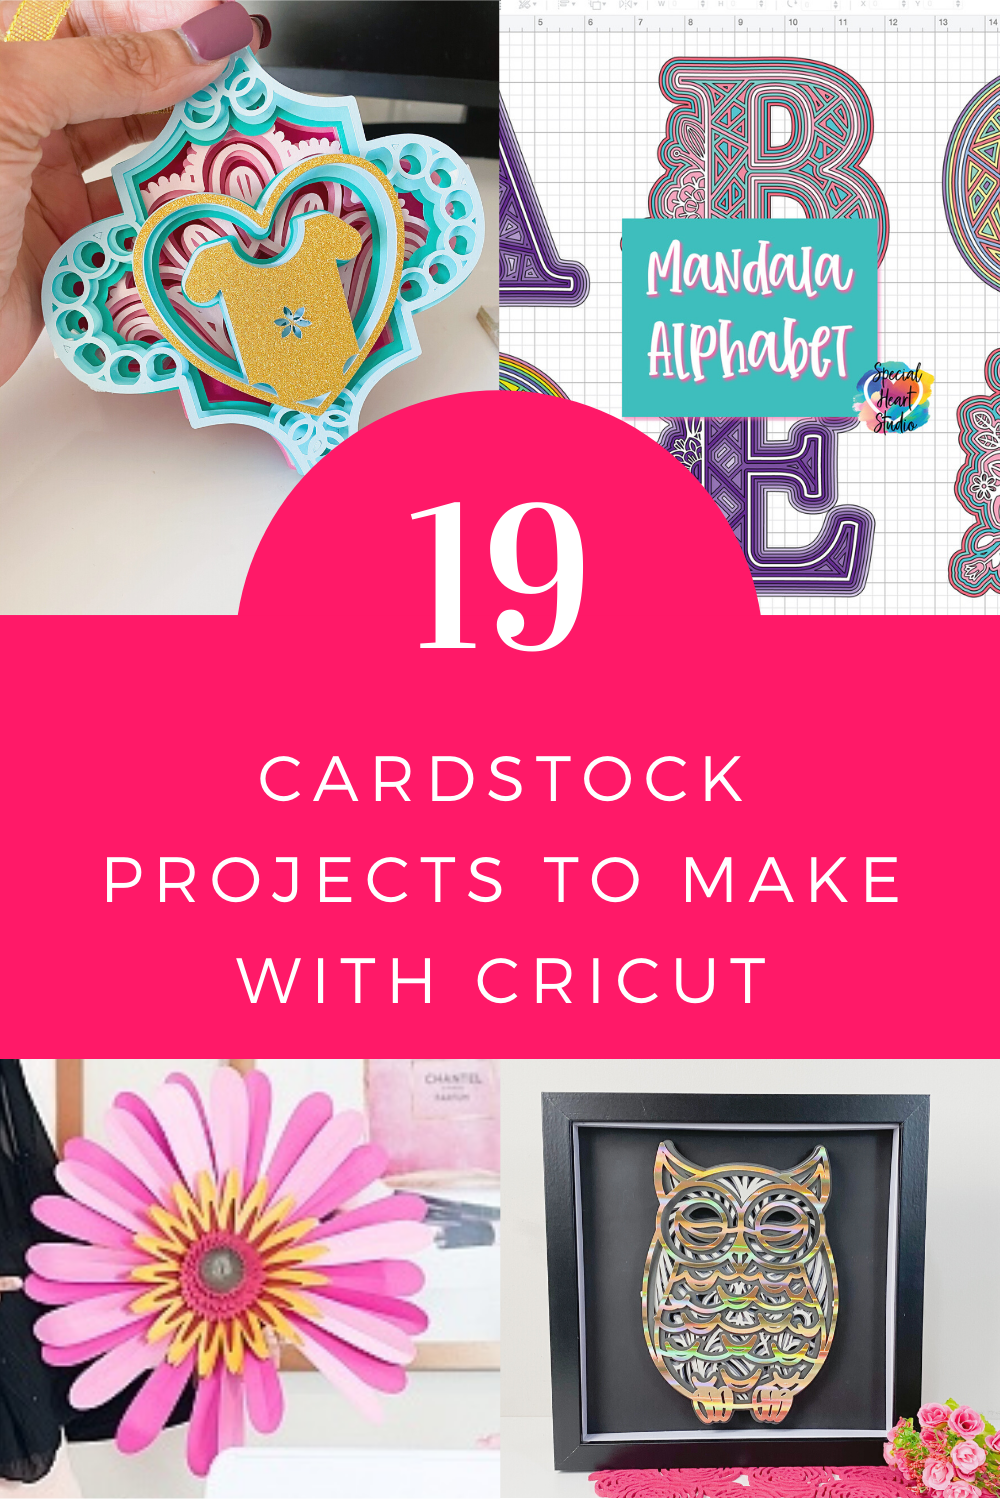 Creative Cricut Scrapbook Ideas with Cricut Joy